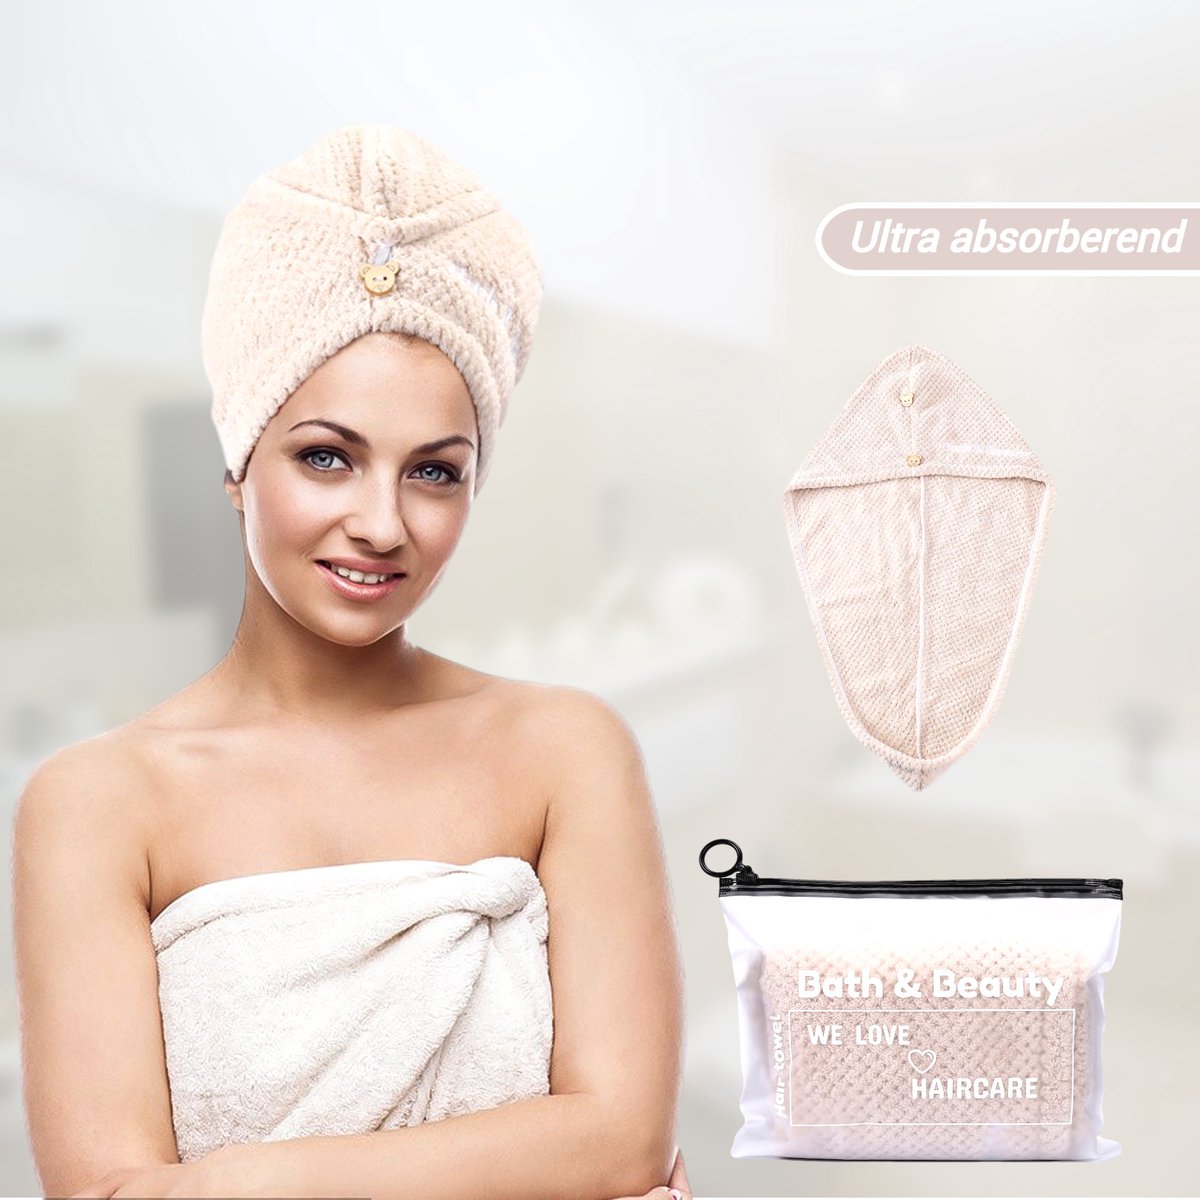 Bath & Beauty Premium Haarhanddoek | Stijl en krullend Haar | Microvezel Handdoek Haar | Tulband | Hoofdhanddoek | Haar Handdoek | Hair Towel |